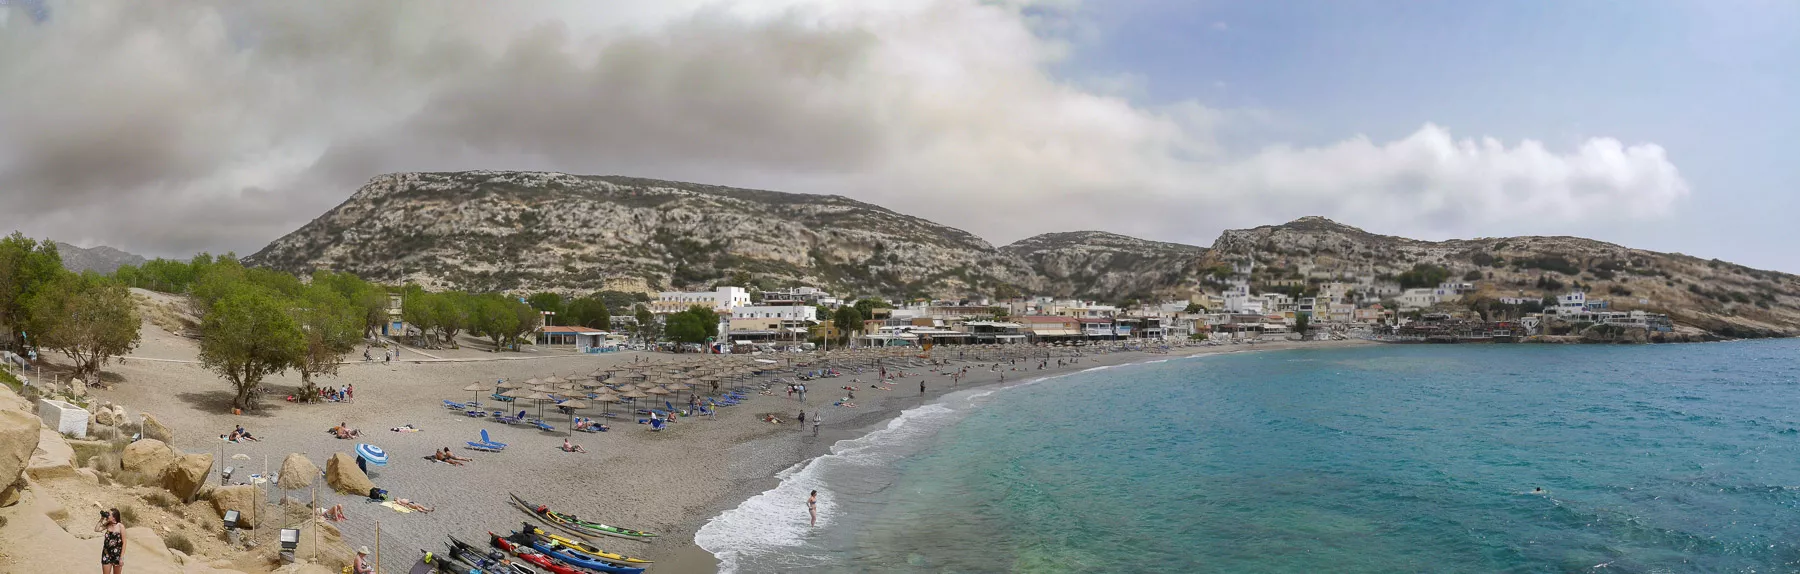 Panorama vom Strand und Ort Matala